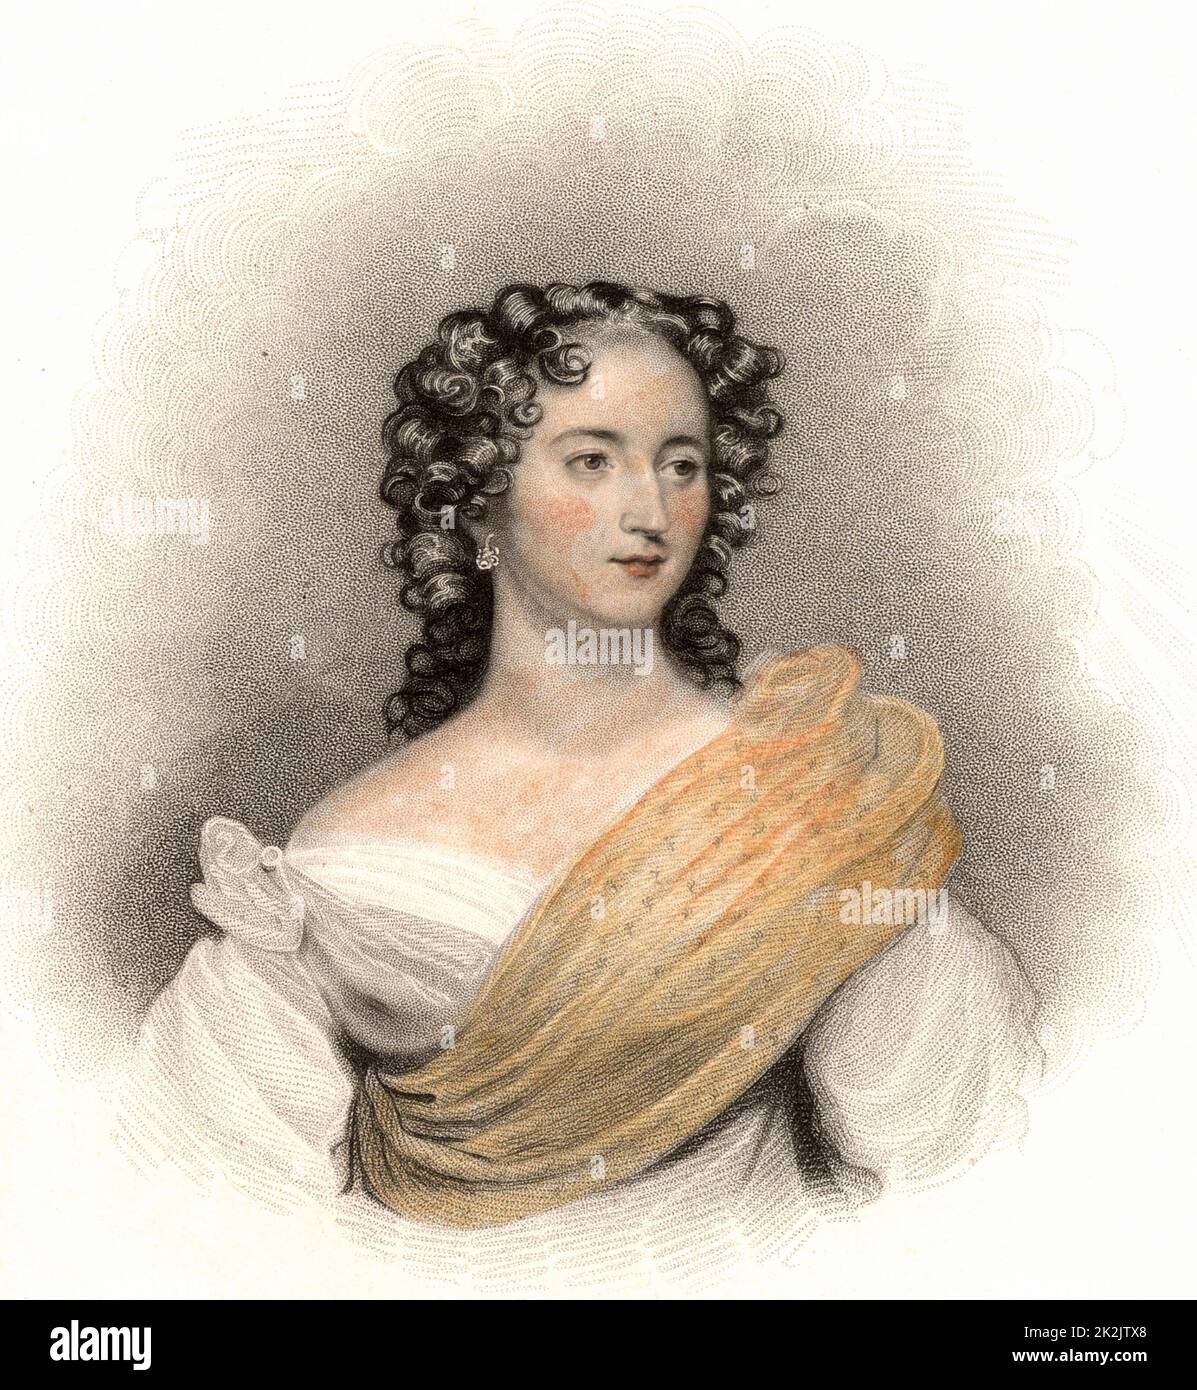 Harriet Constance Smithson (1800-1854) actrice irlandaise. En 1827, elle est apparue à Paris sous le nom d'Ophelia 'Hamlet' et de Juliette dans 'Romeo et Juliette', lorsque le compositeur français Hector Berlioz s'est enamé d'elle. Ils se sont mariés en 1833 et se sont séparés en 1841. Gravure publiée 1819. Banque D'Images